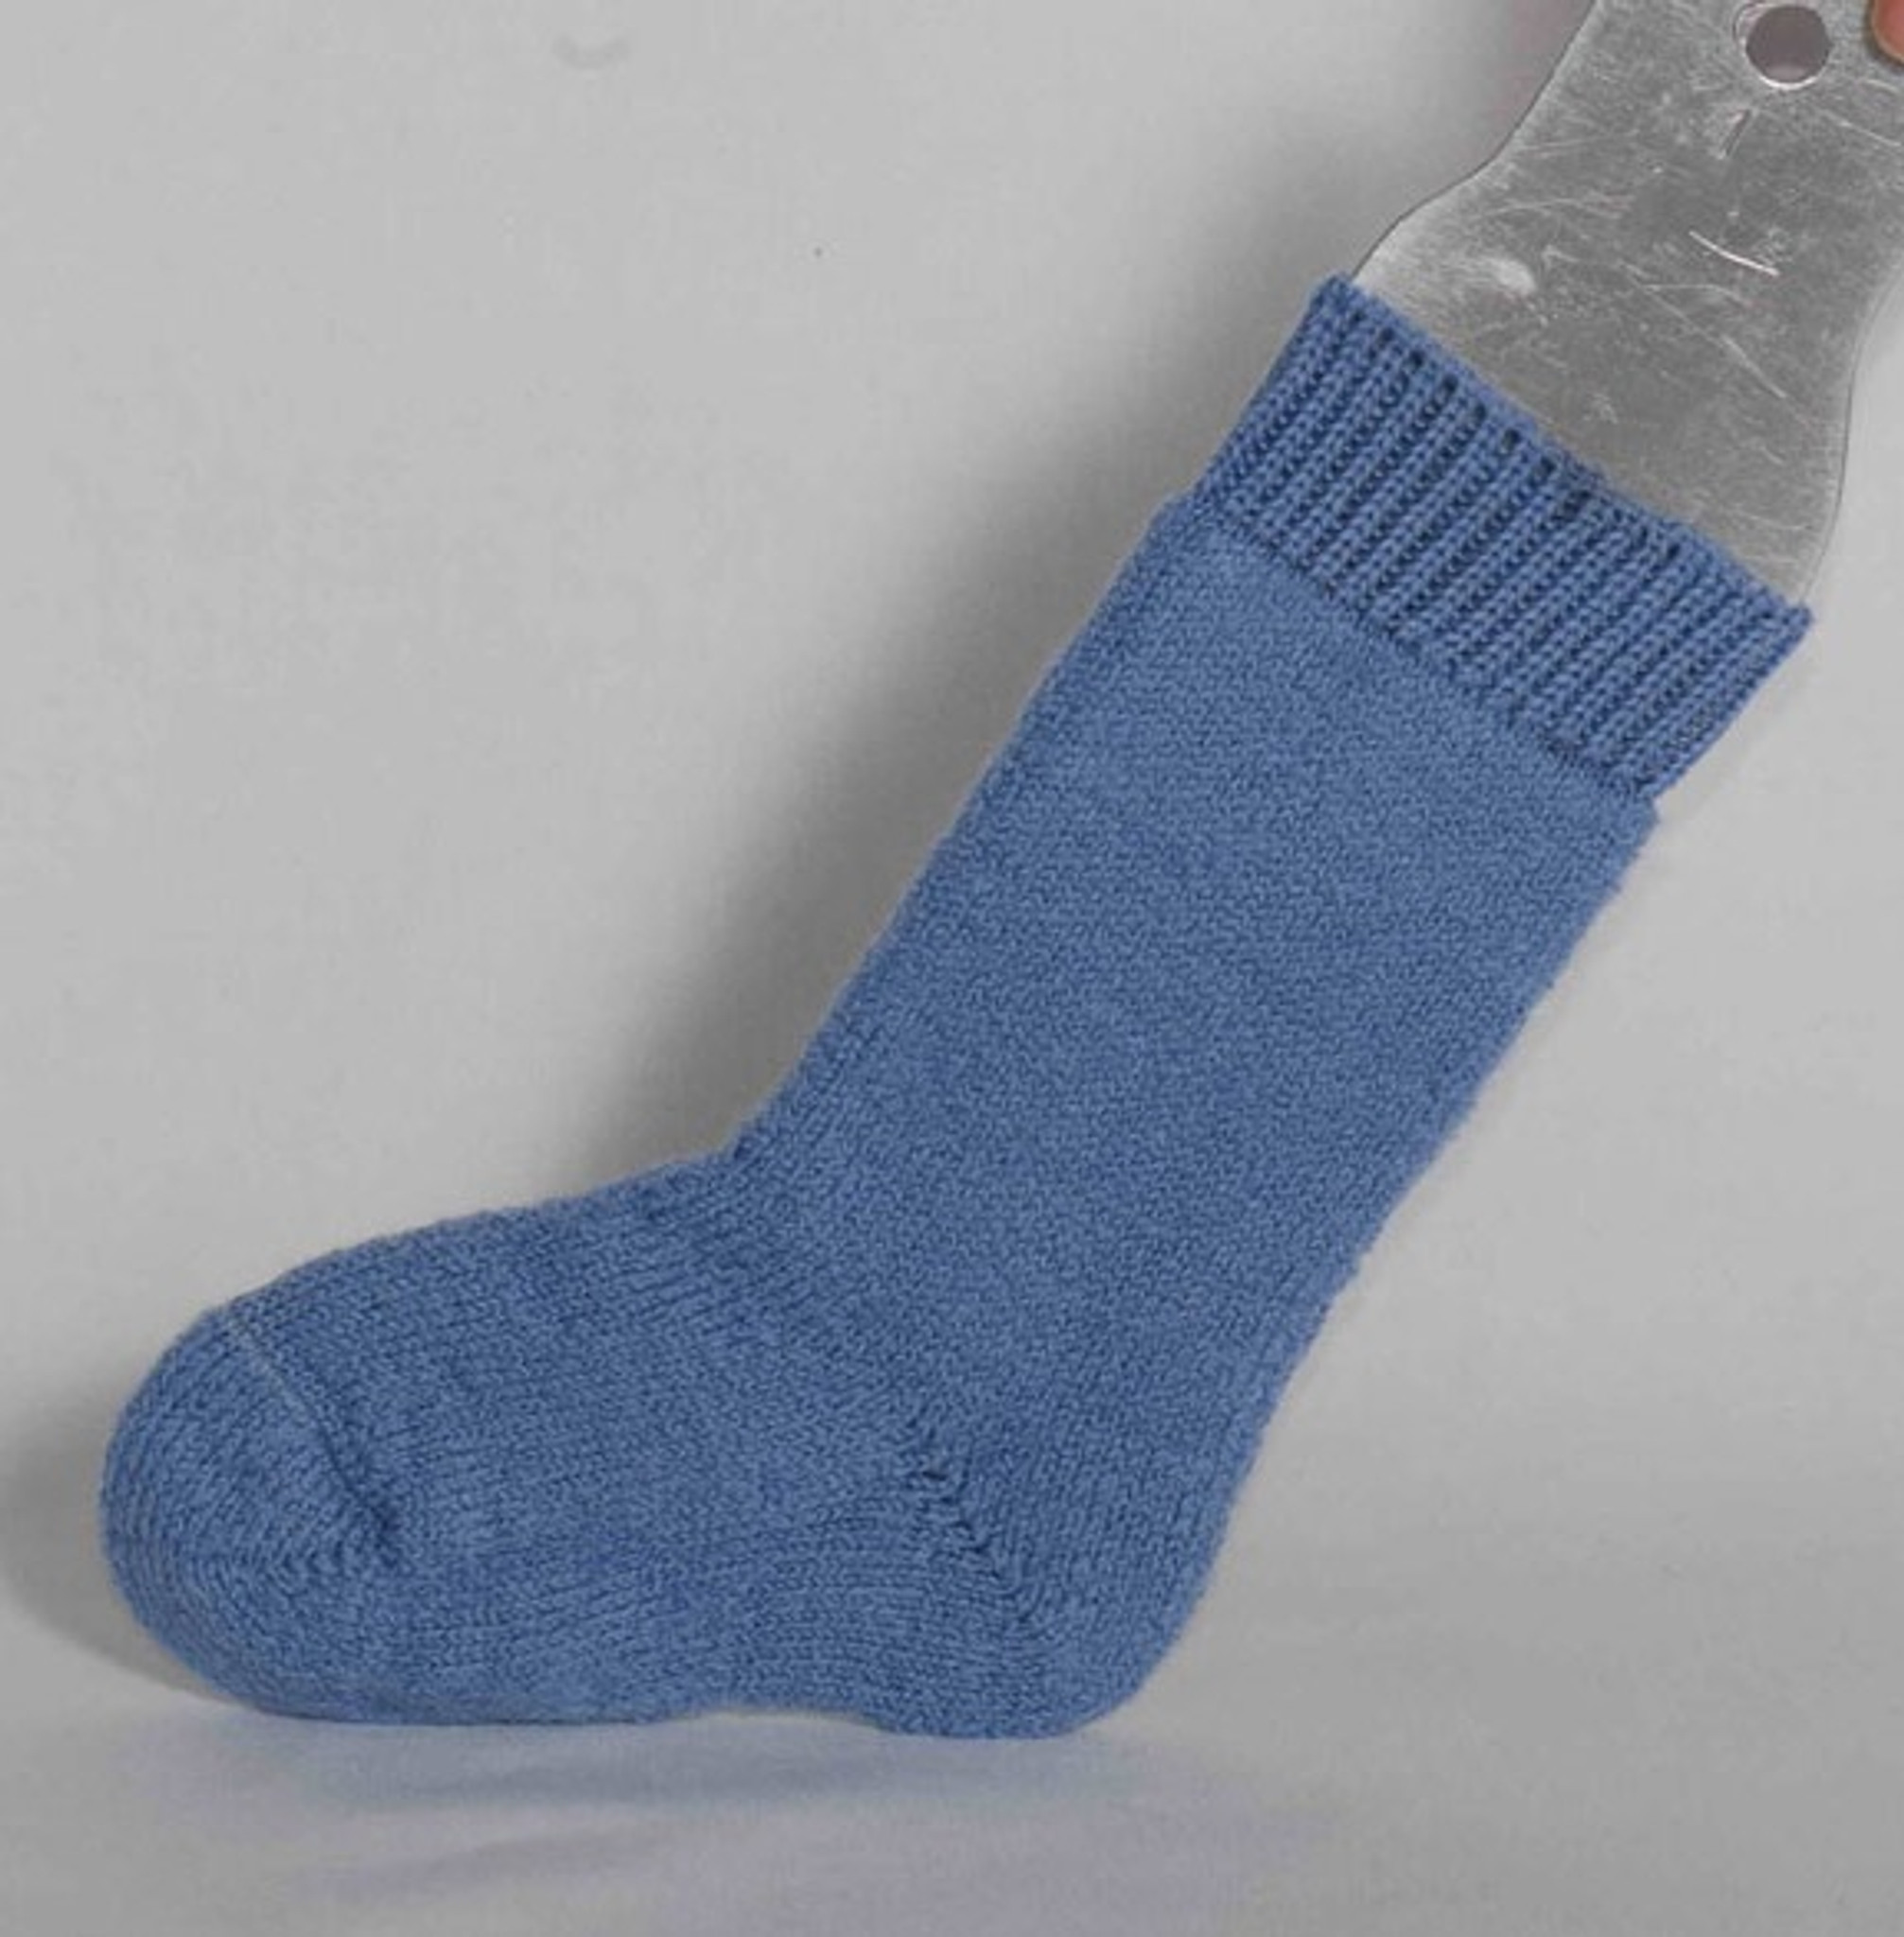 Walking Socks in Organic Wool. Green rib-knit adult walking socks with  terry sole in 100% organic wool by Hirsch Natur.